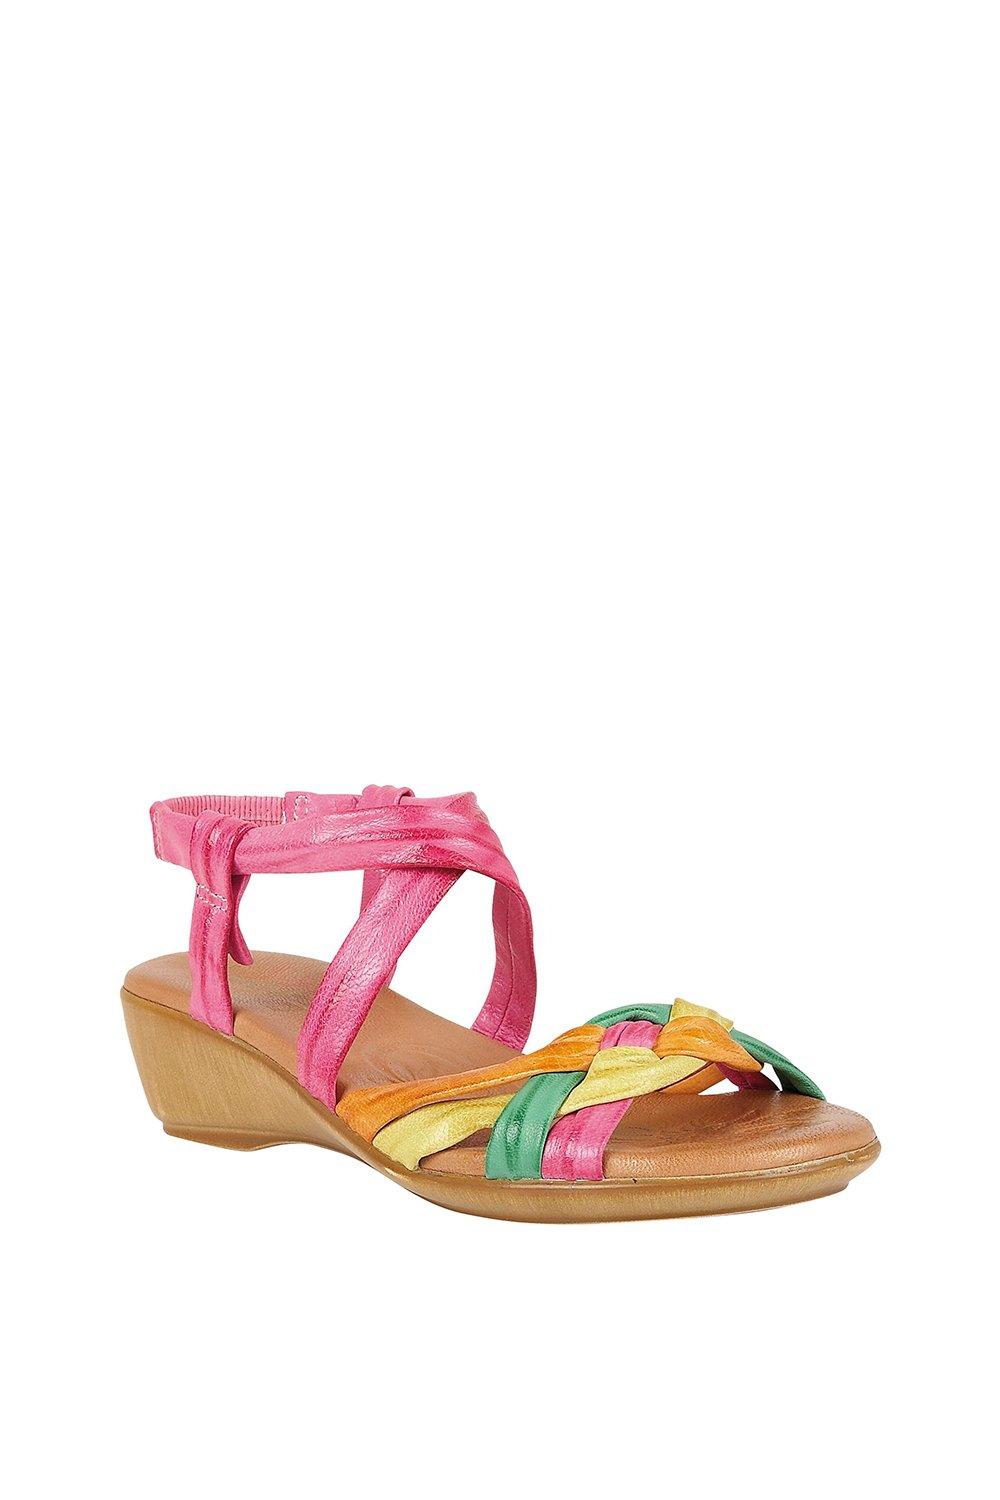 Кожаные босоножки с открытым носком фуксии 'Luxa' Lotus, розовый сандалии женские на платформе 8 см босоножки на танкетке на толстой подошве с открытым носком обувь в римском стиле повседневная пляжная о